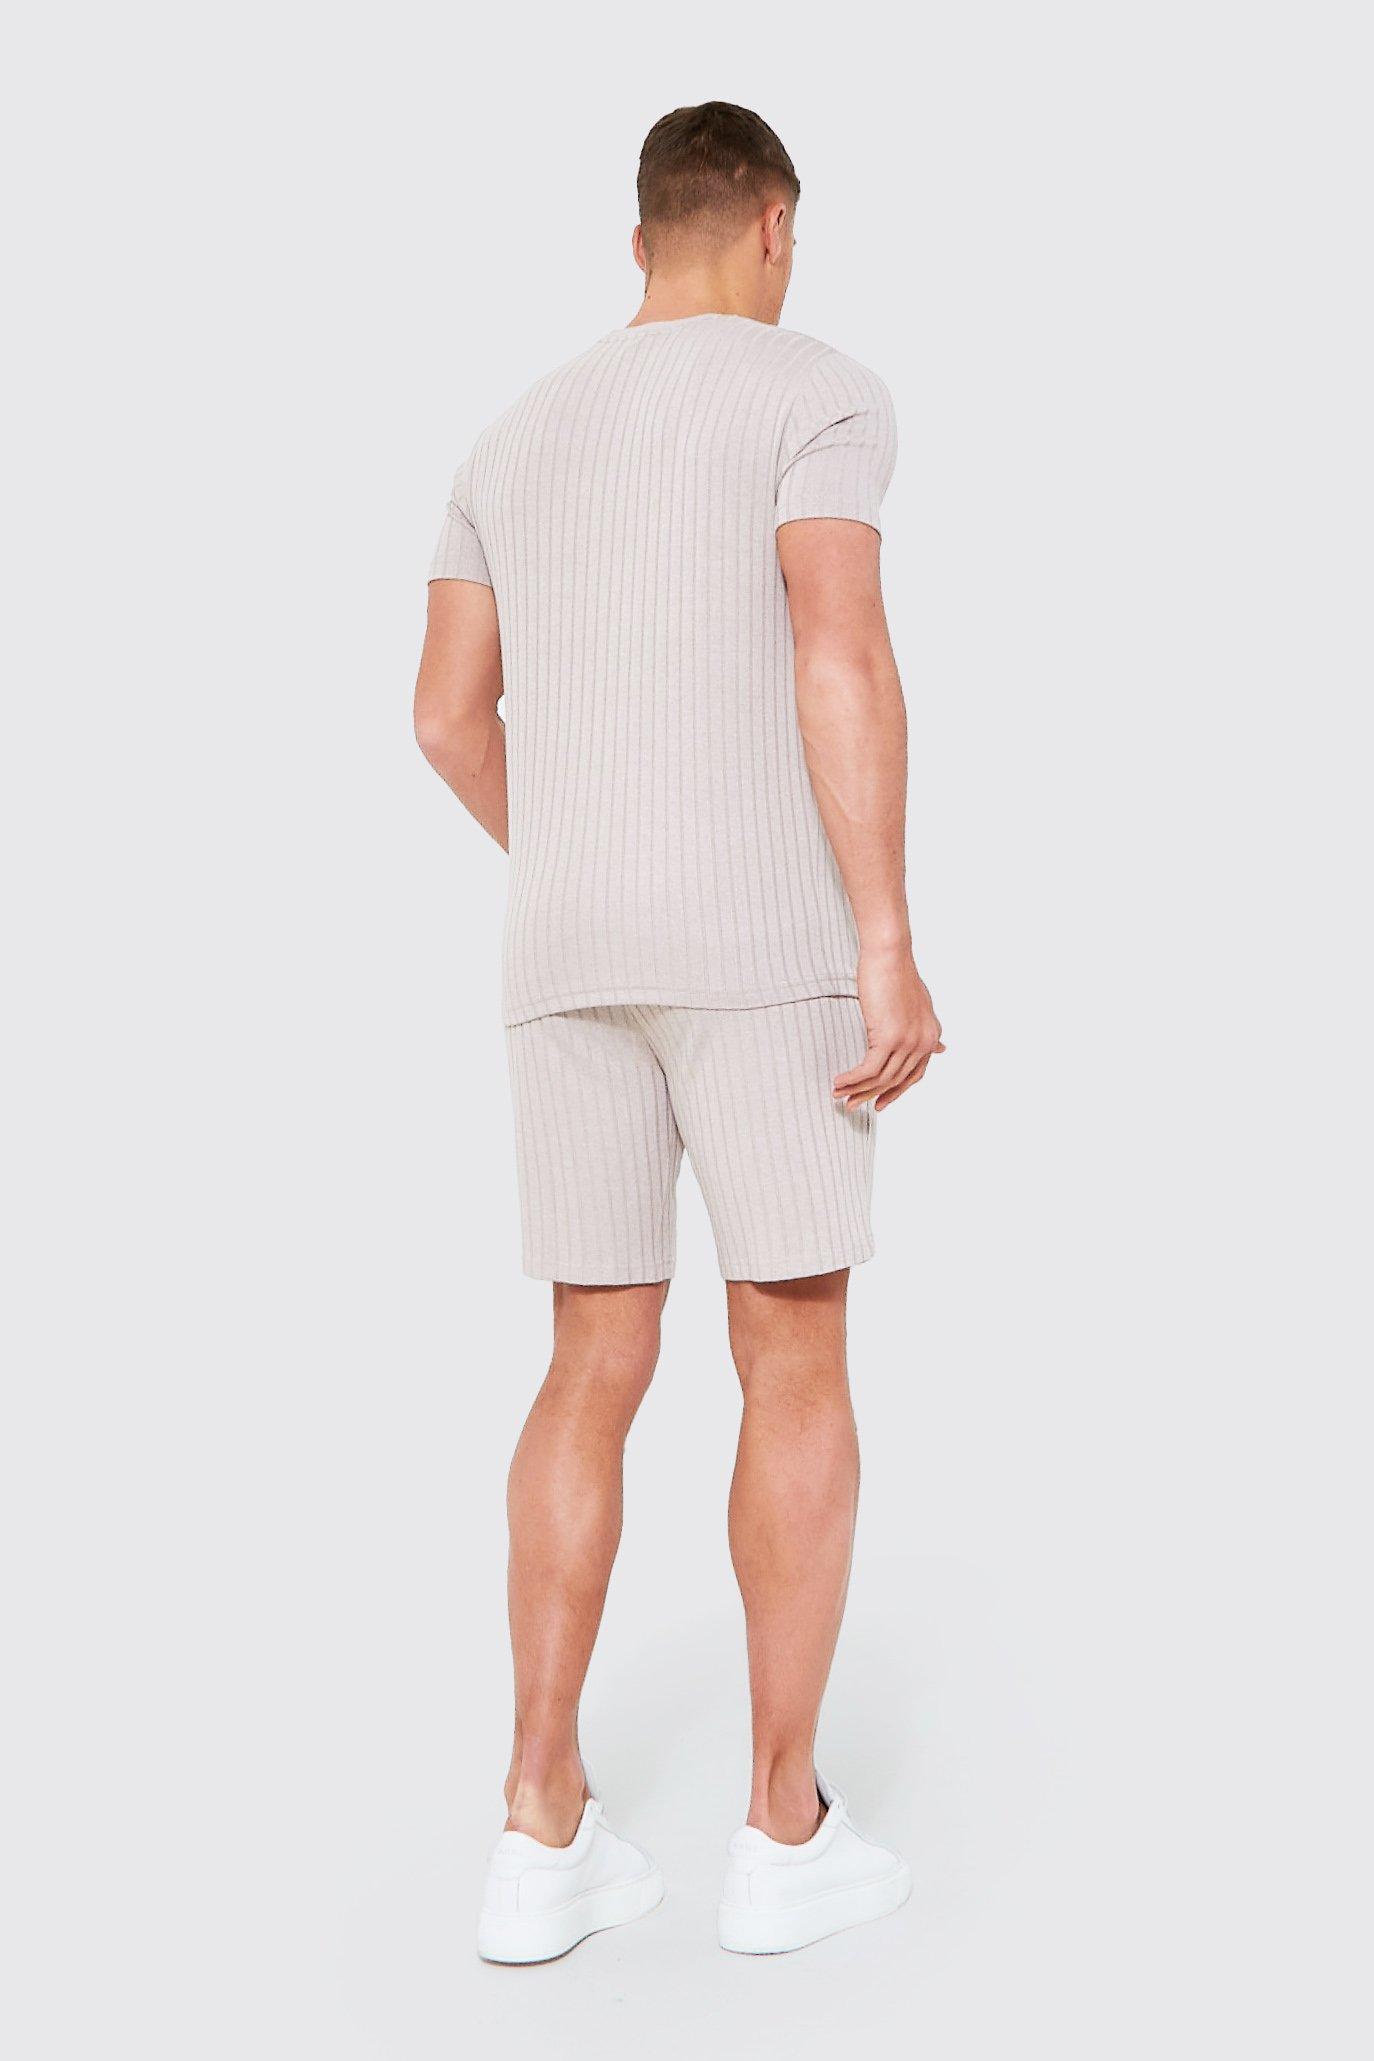 js63 Pantaloni dimensione selezionabile Set Maglietta NUOVO 